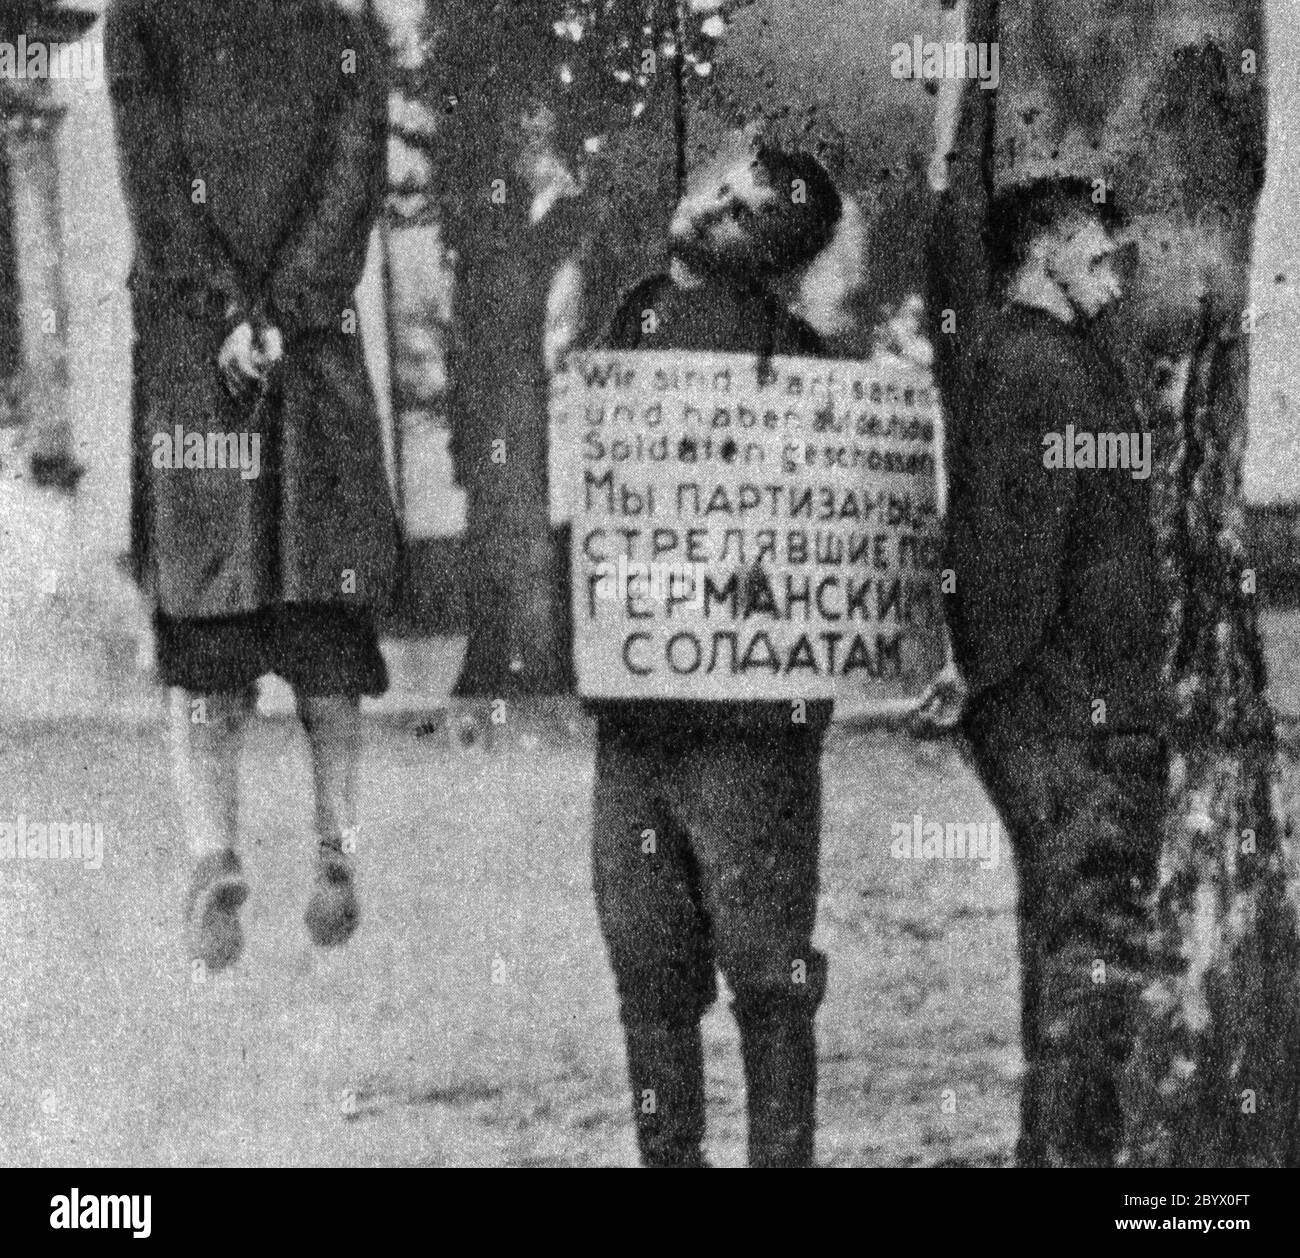 Osteuropa während des Zweiten Weltkriegs. Partisanen von Nazi-deutschen Truppen gehängt. Foto aufgenommen in besetzten Gebieten der UdSSR oder Polen (ca. Unbekanntes Datum) Stockfoto